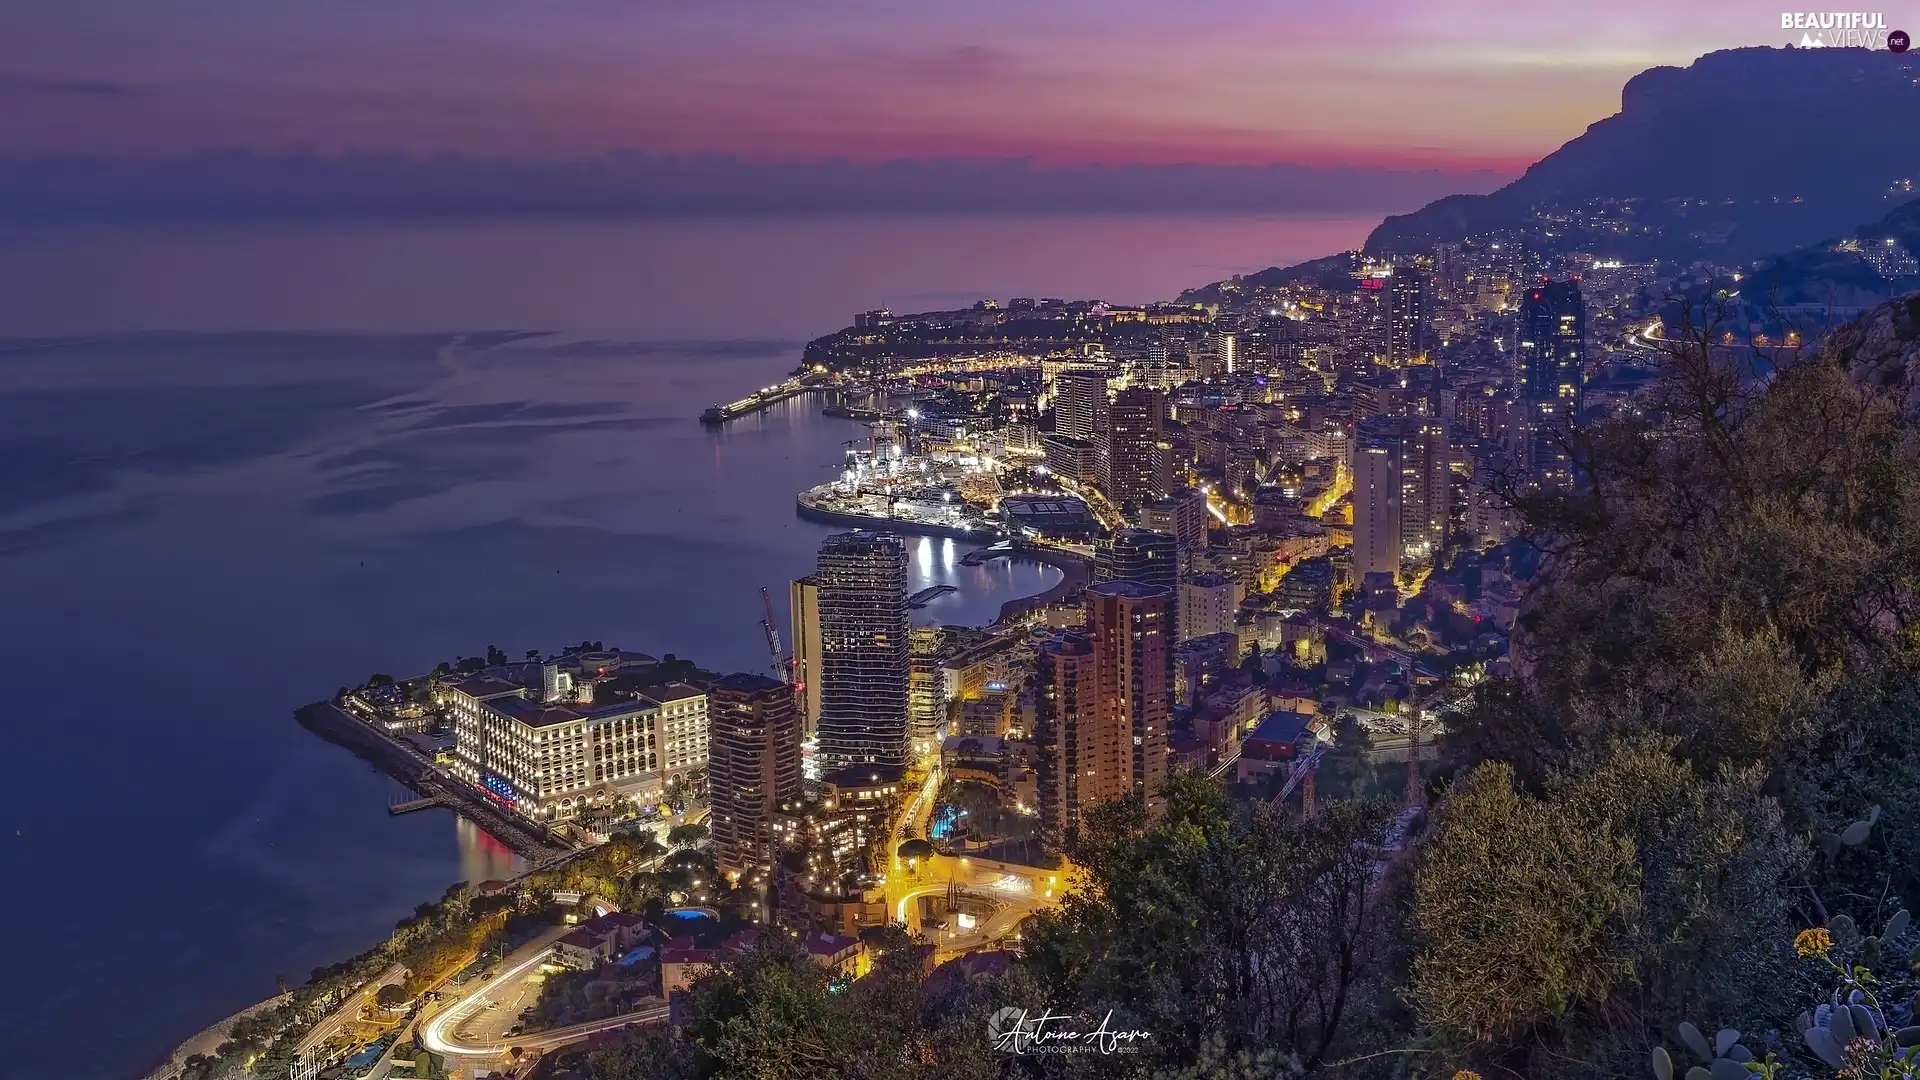 Town, Monaco, sea, illuminated, Night